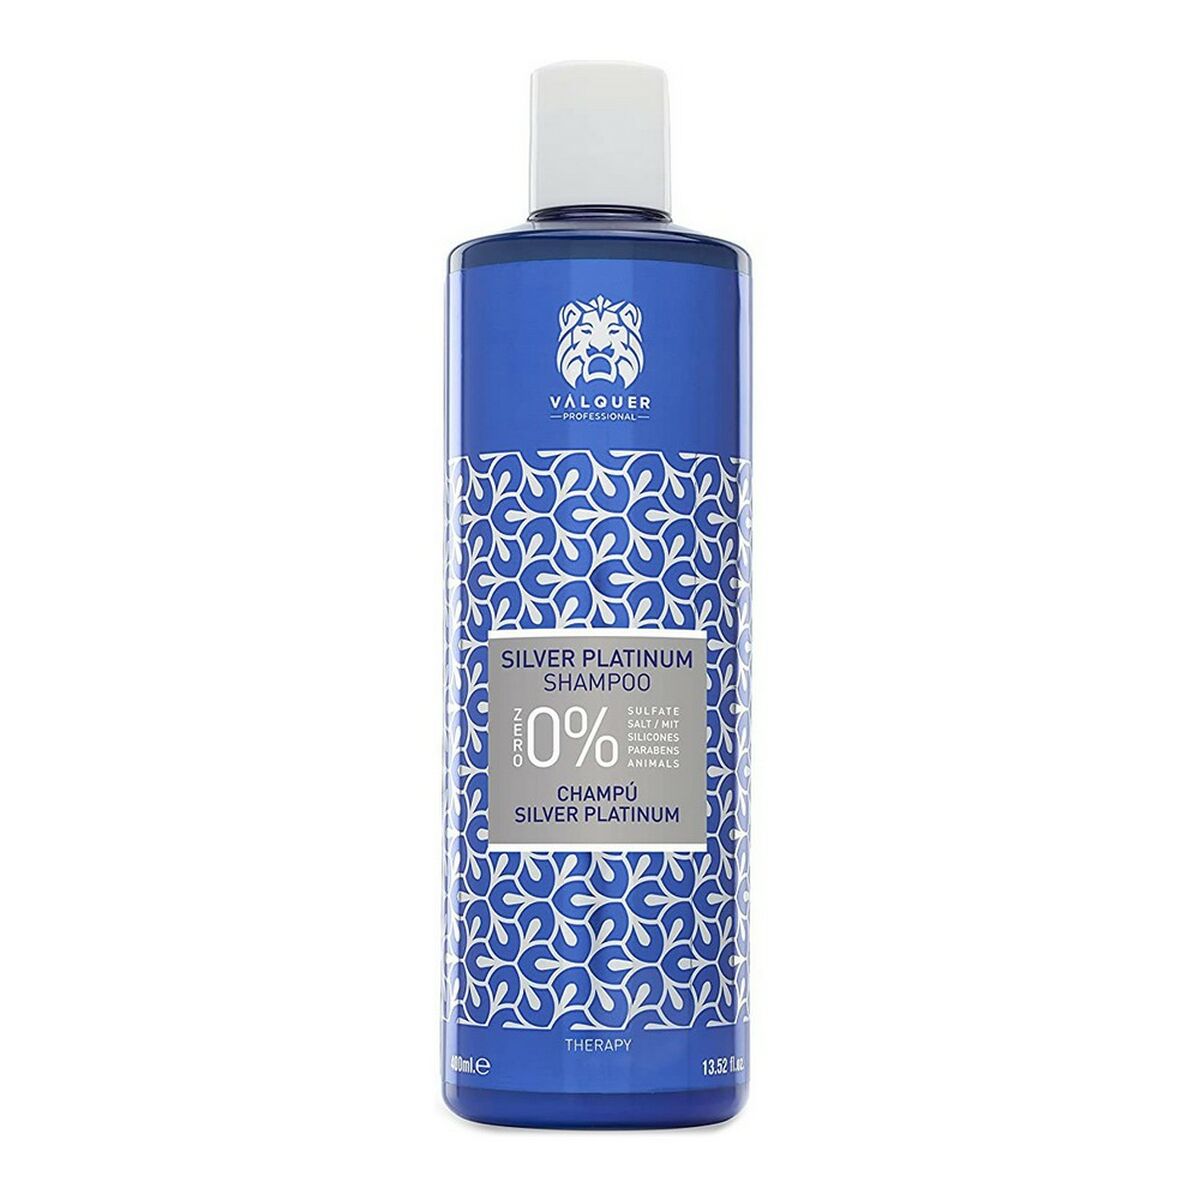 Shampoo zur Farbneutralisierung SIlver Platinum Zero Valquer (400 ml)